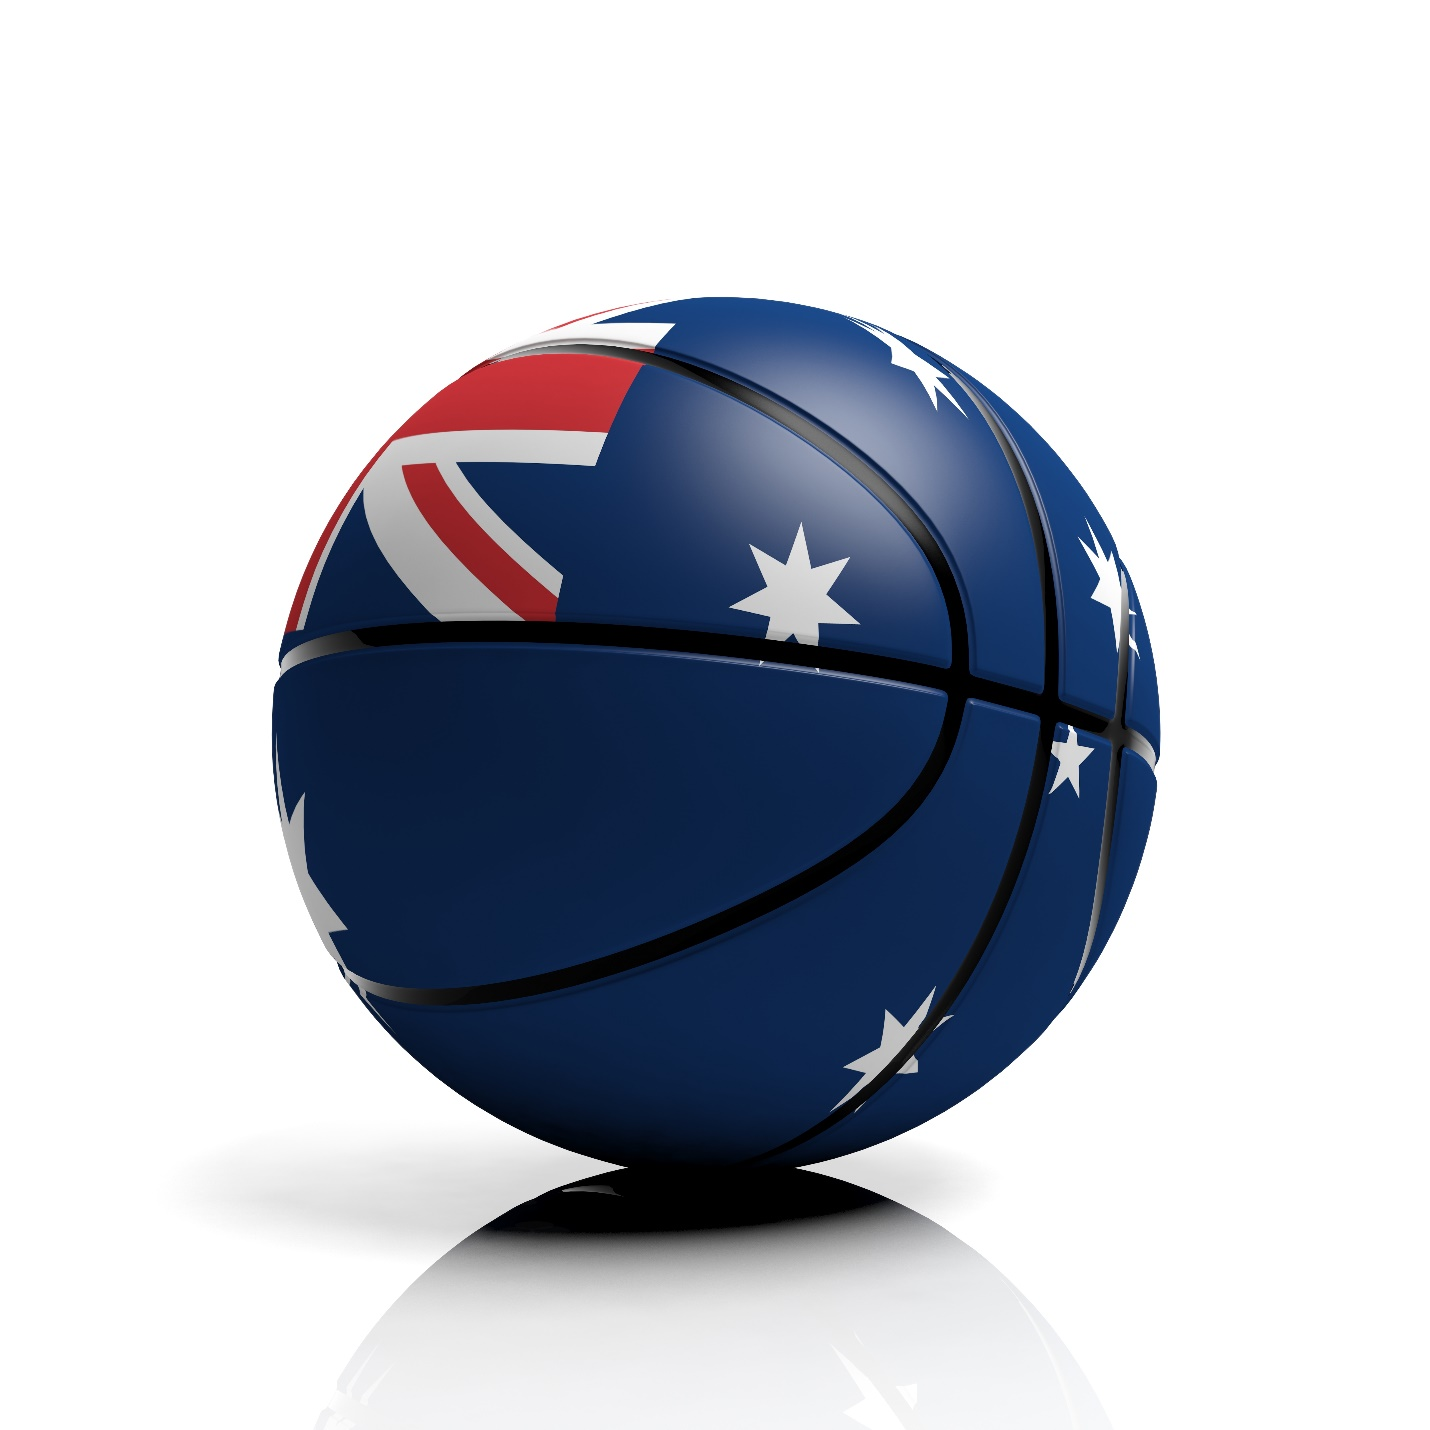 Australian flag printed on a basketball